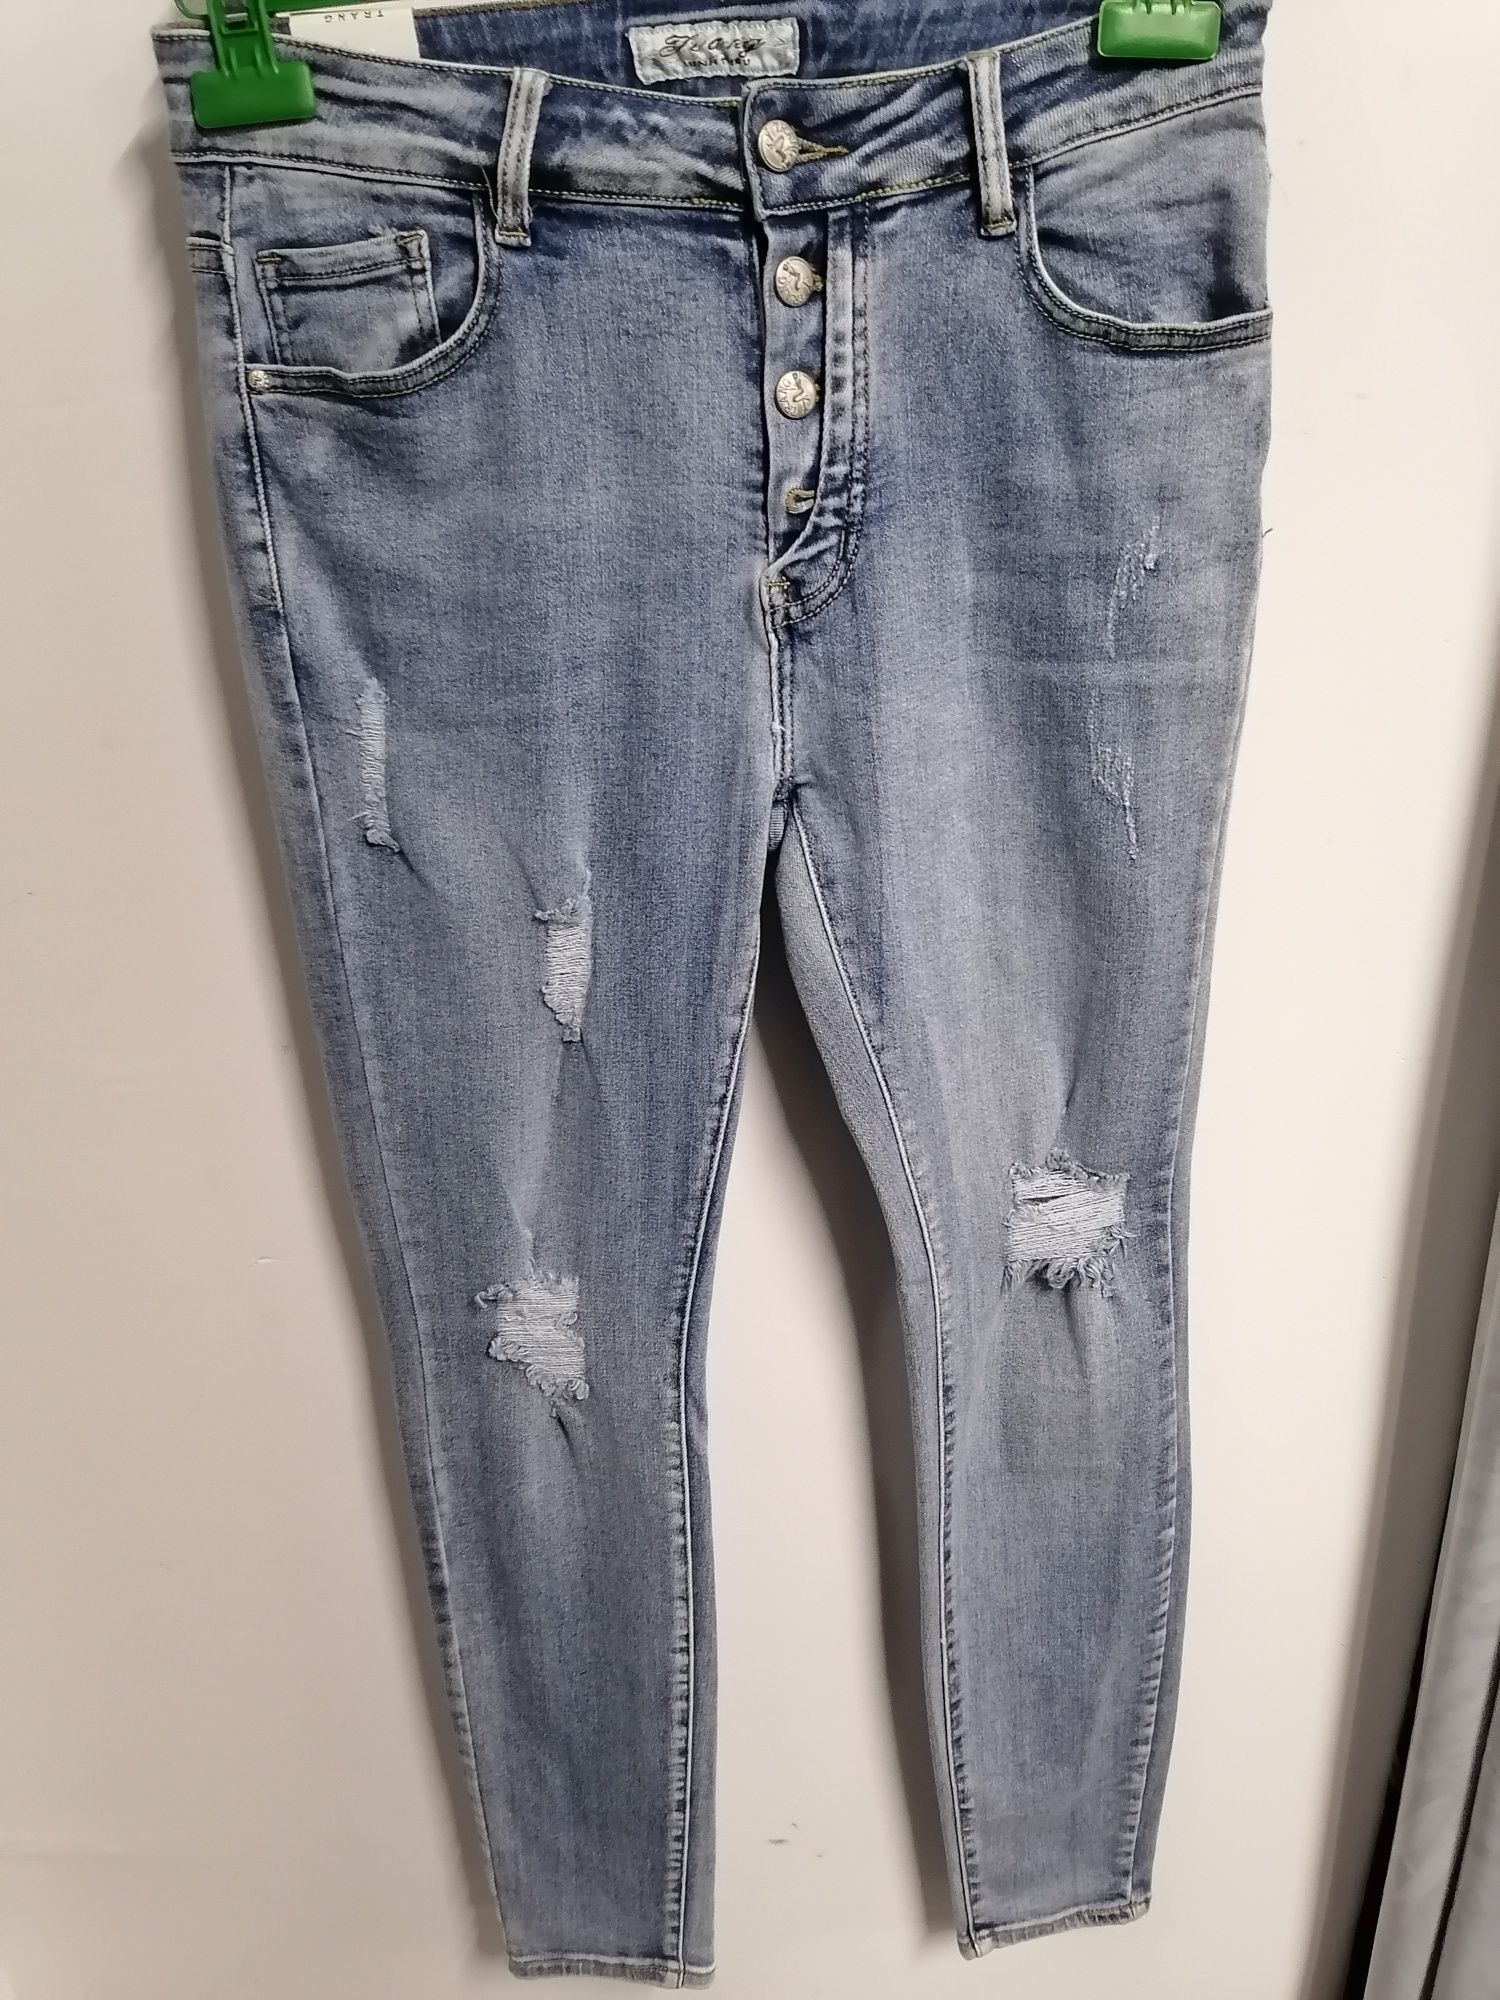 Spodnie damskie Jeans Roz 40, 44